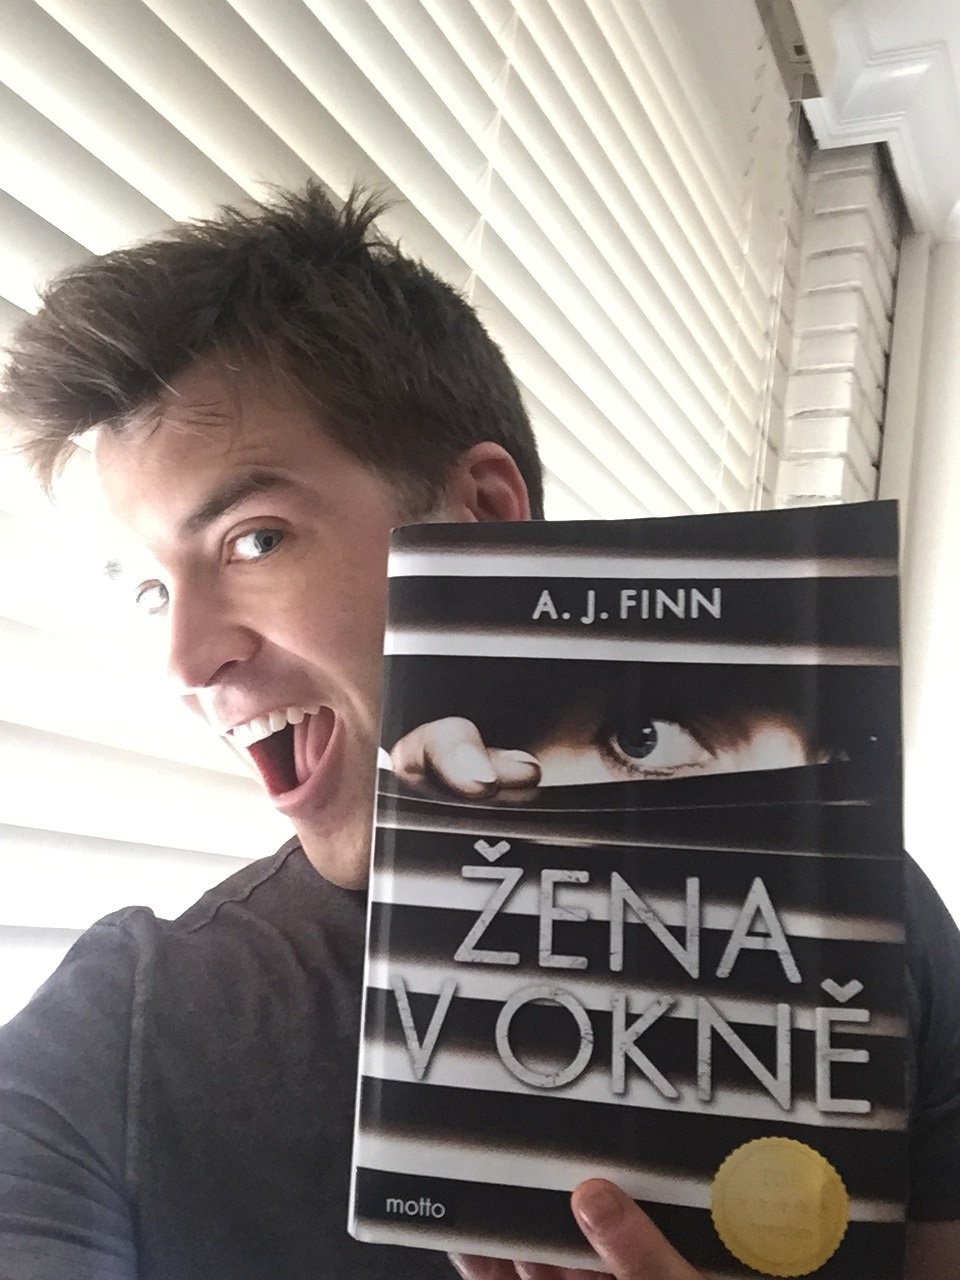 Žena v okně: Jako první si thriller roku přečteme v Česku! Její autor A. J. Finn se Blesku svěřil: „Z úspěchu mé knihy jsem vyděšený!“